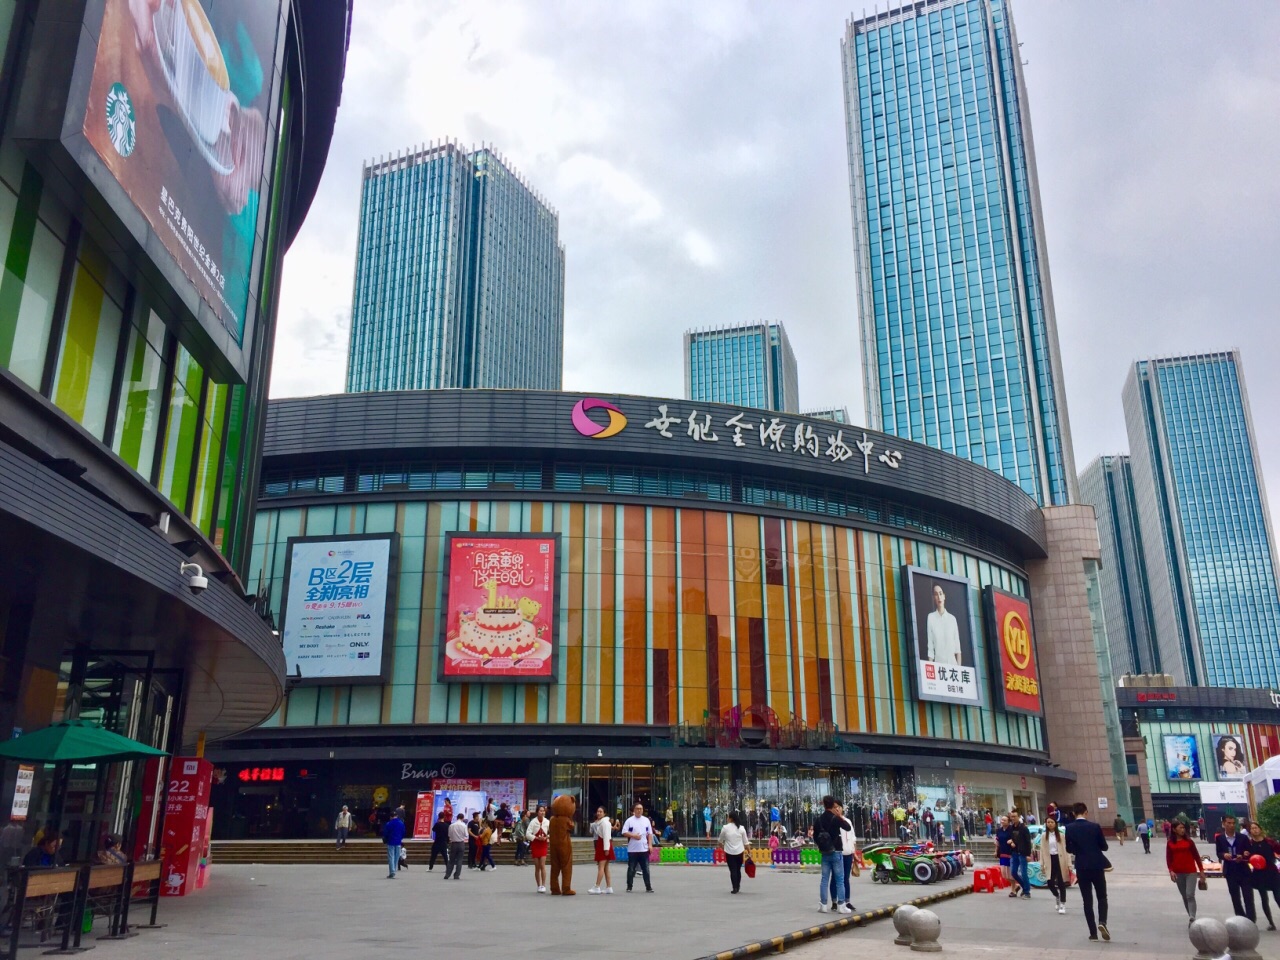 坐落在贵阳北京西路上的超级购物中心,超大型停车场,abcd栋商场应有